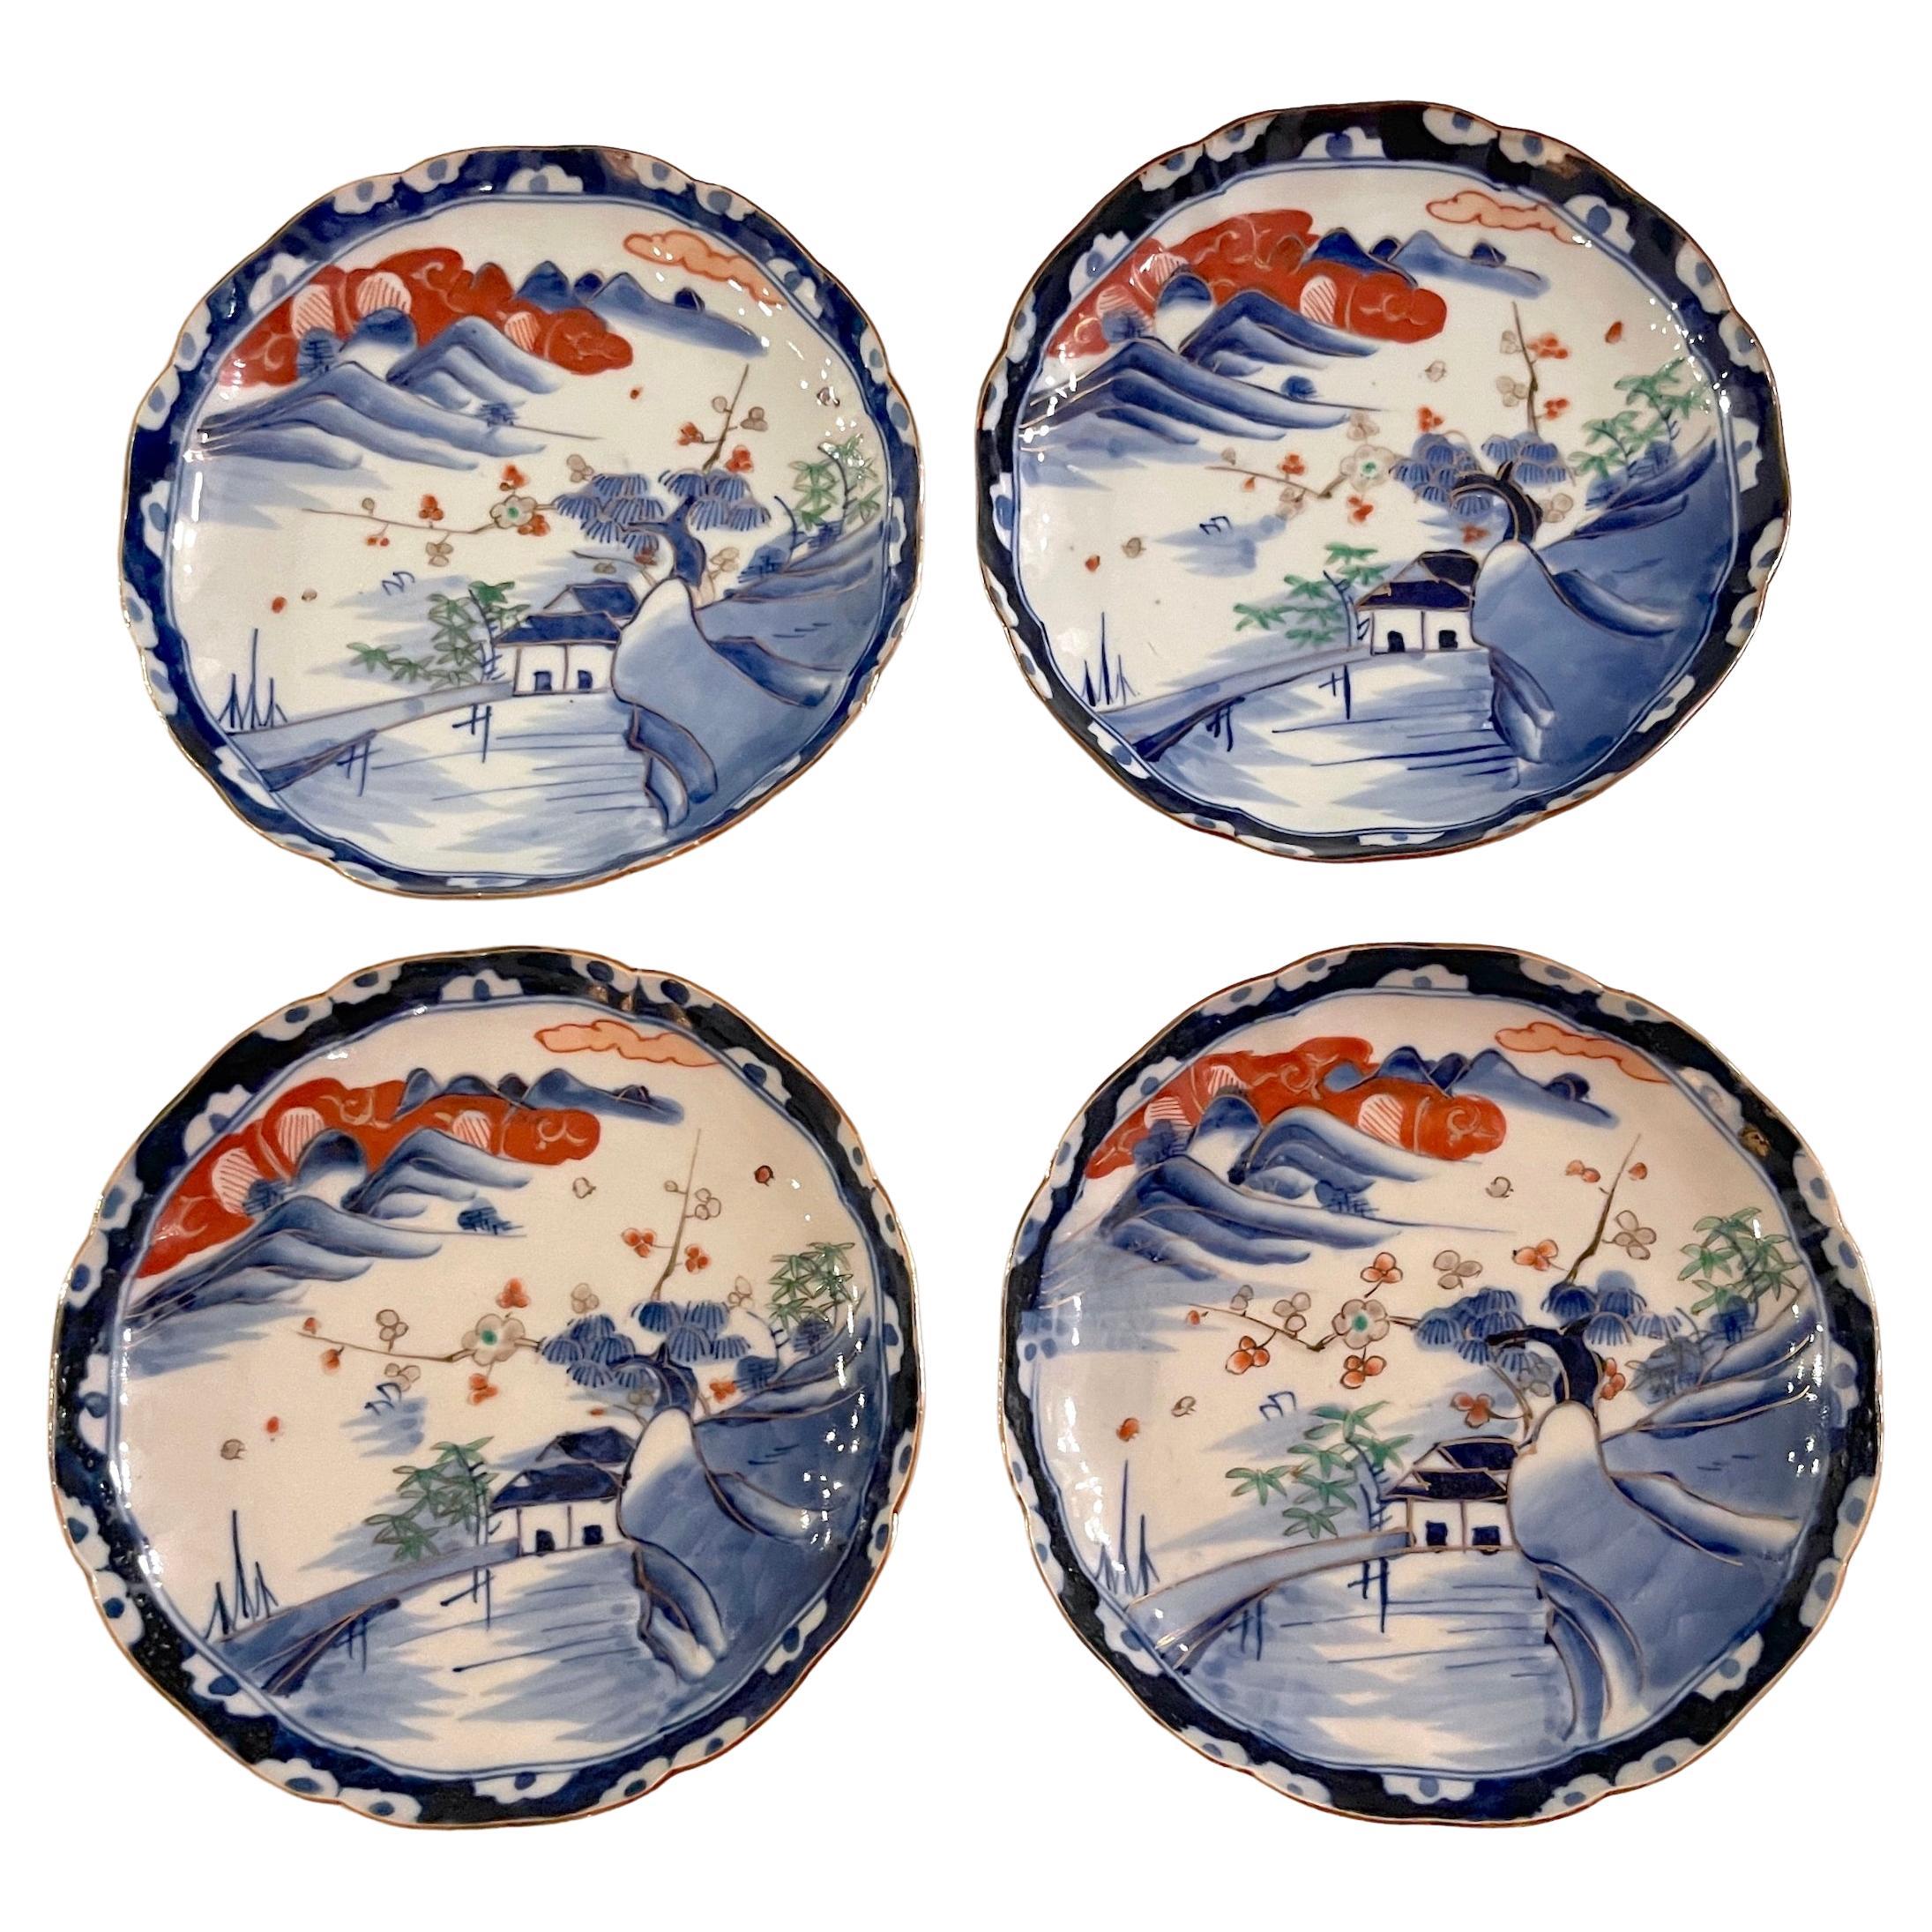 Quatre assiettes festonnées scéniques Imari de la période Meiji, attribuées à Fukagawa